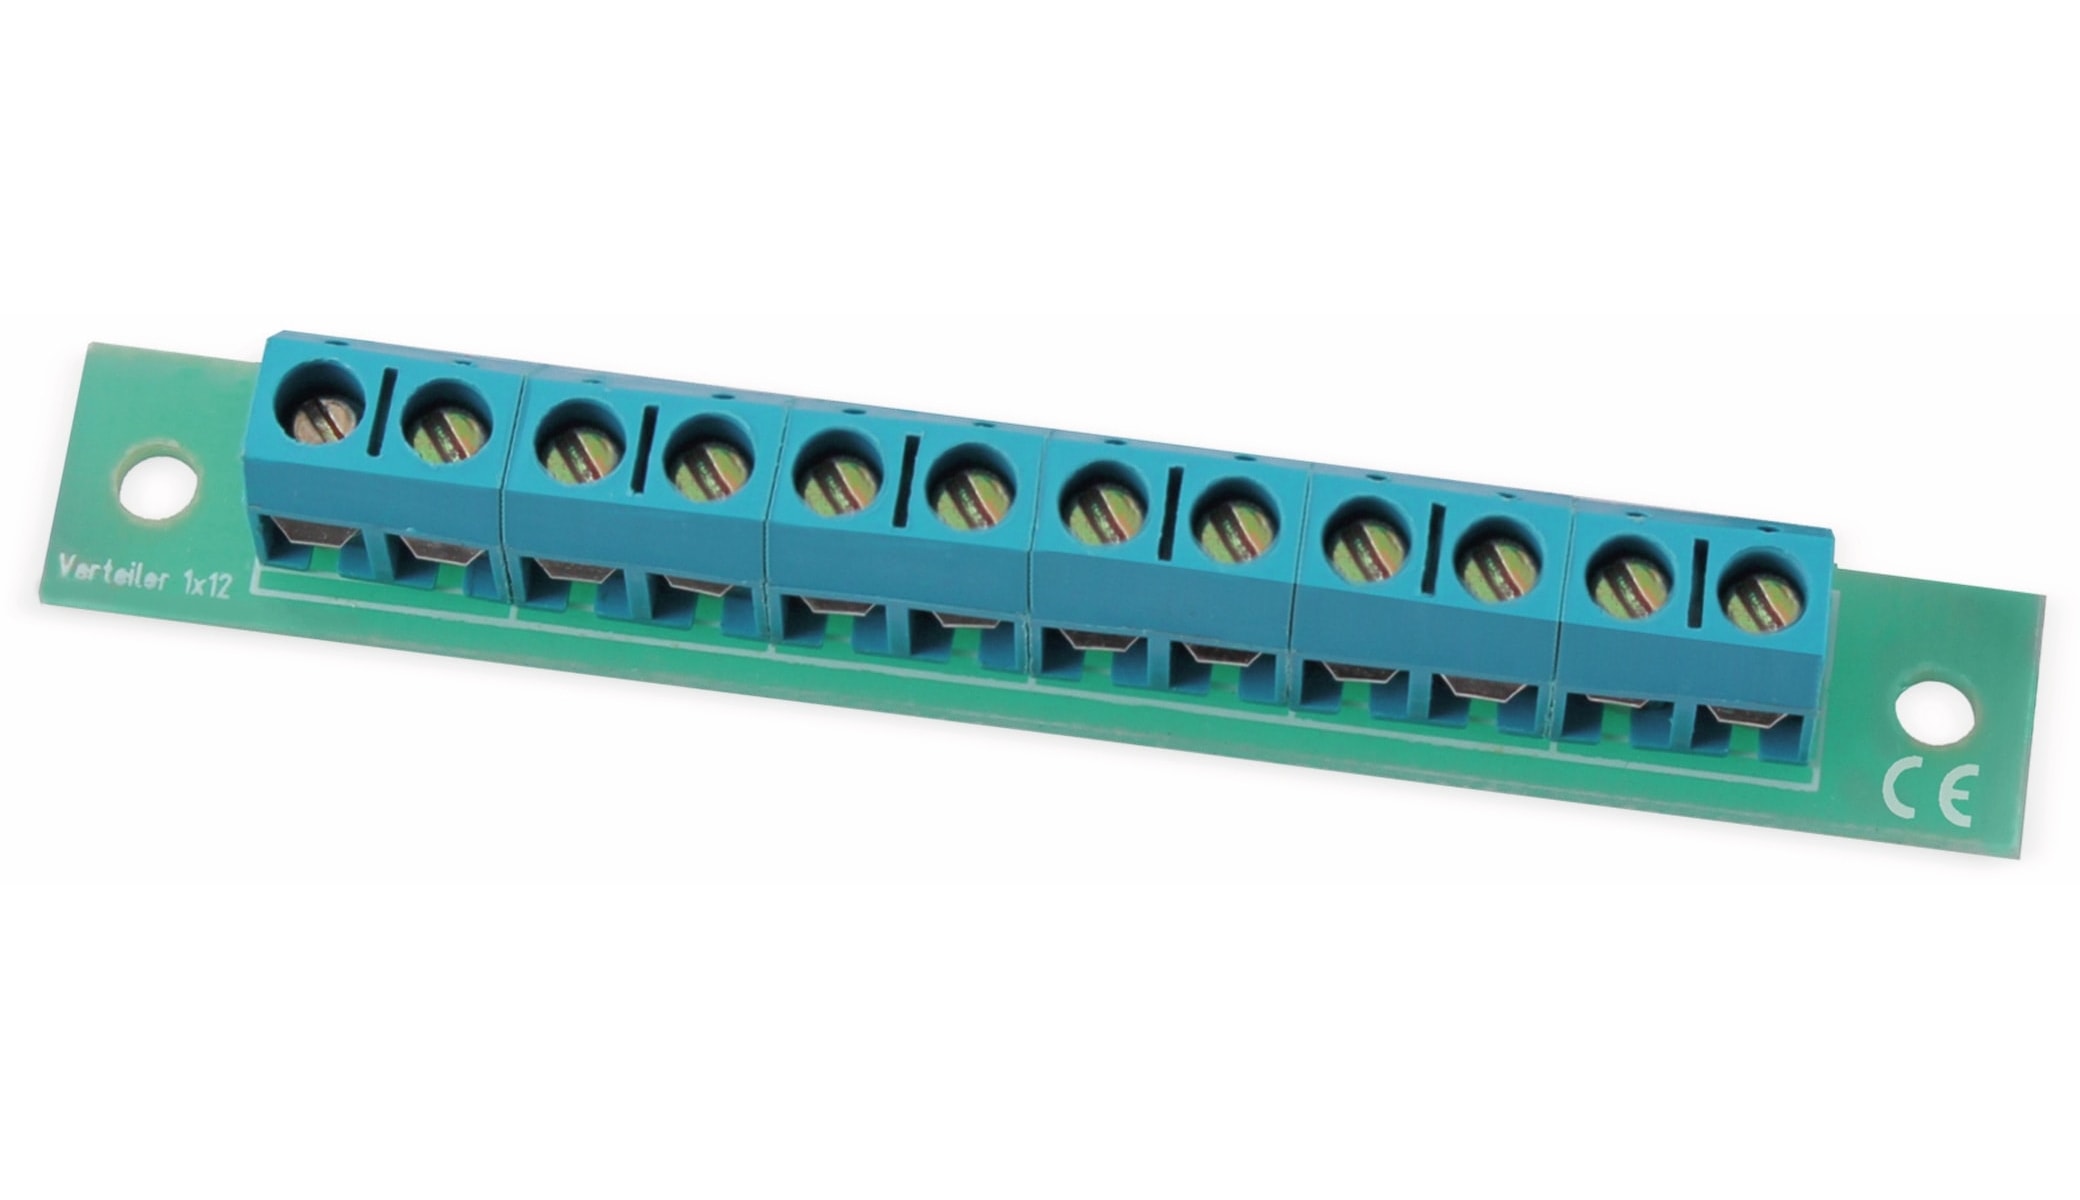 Stromverteiler 1x 12-polig, V1x12, mit Schraubklemmen